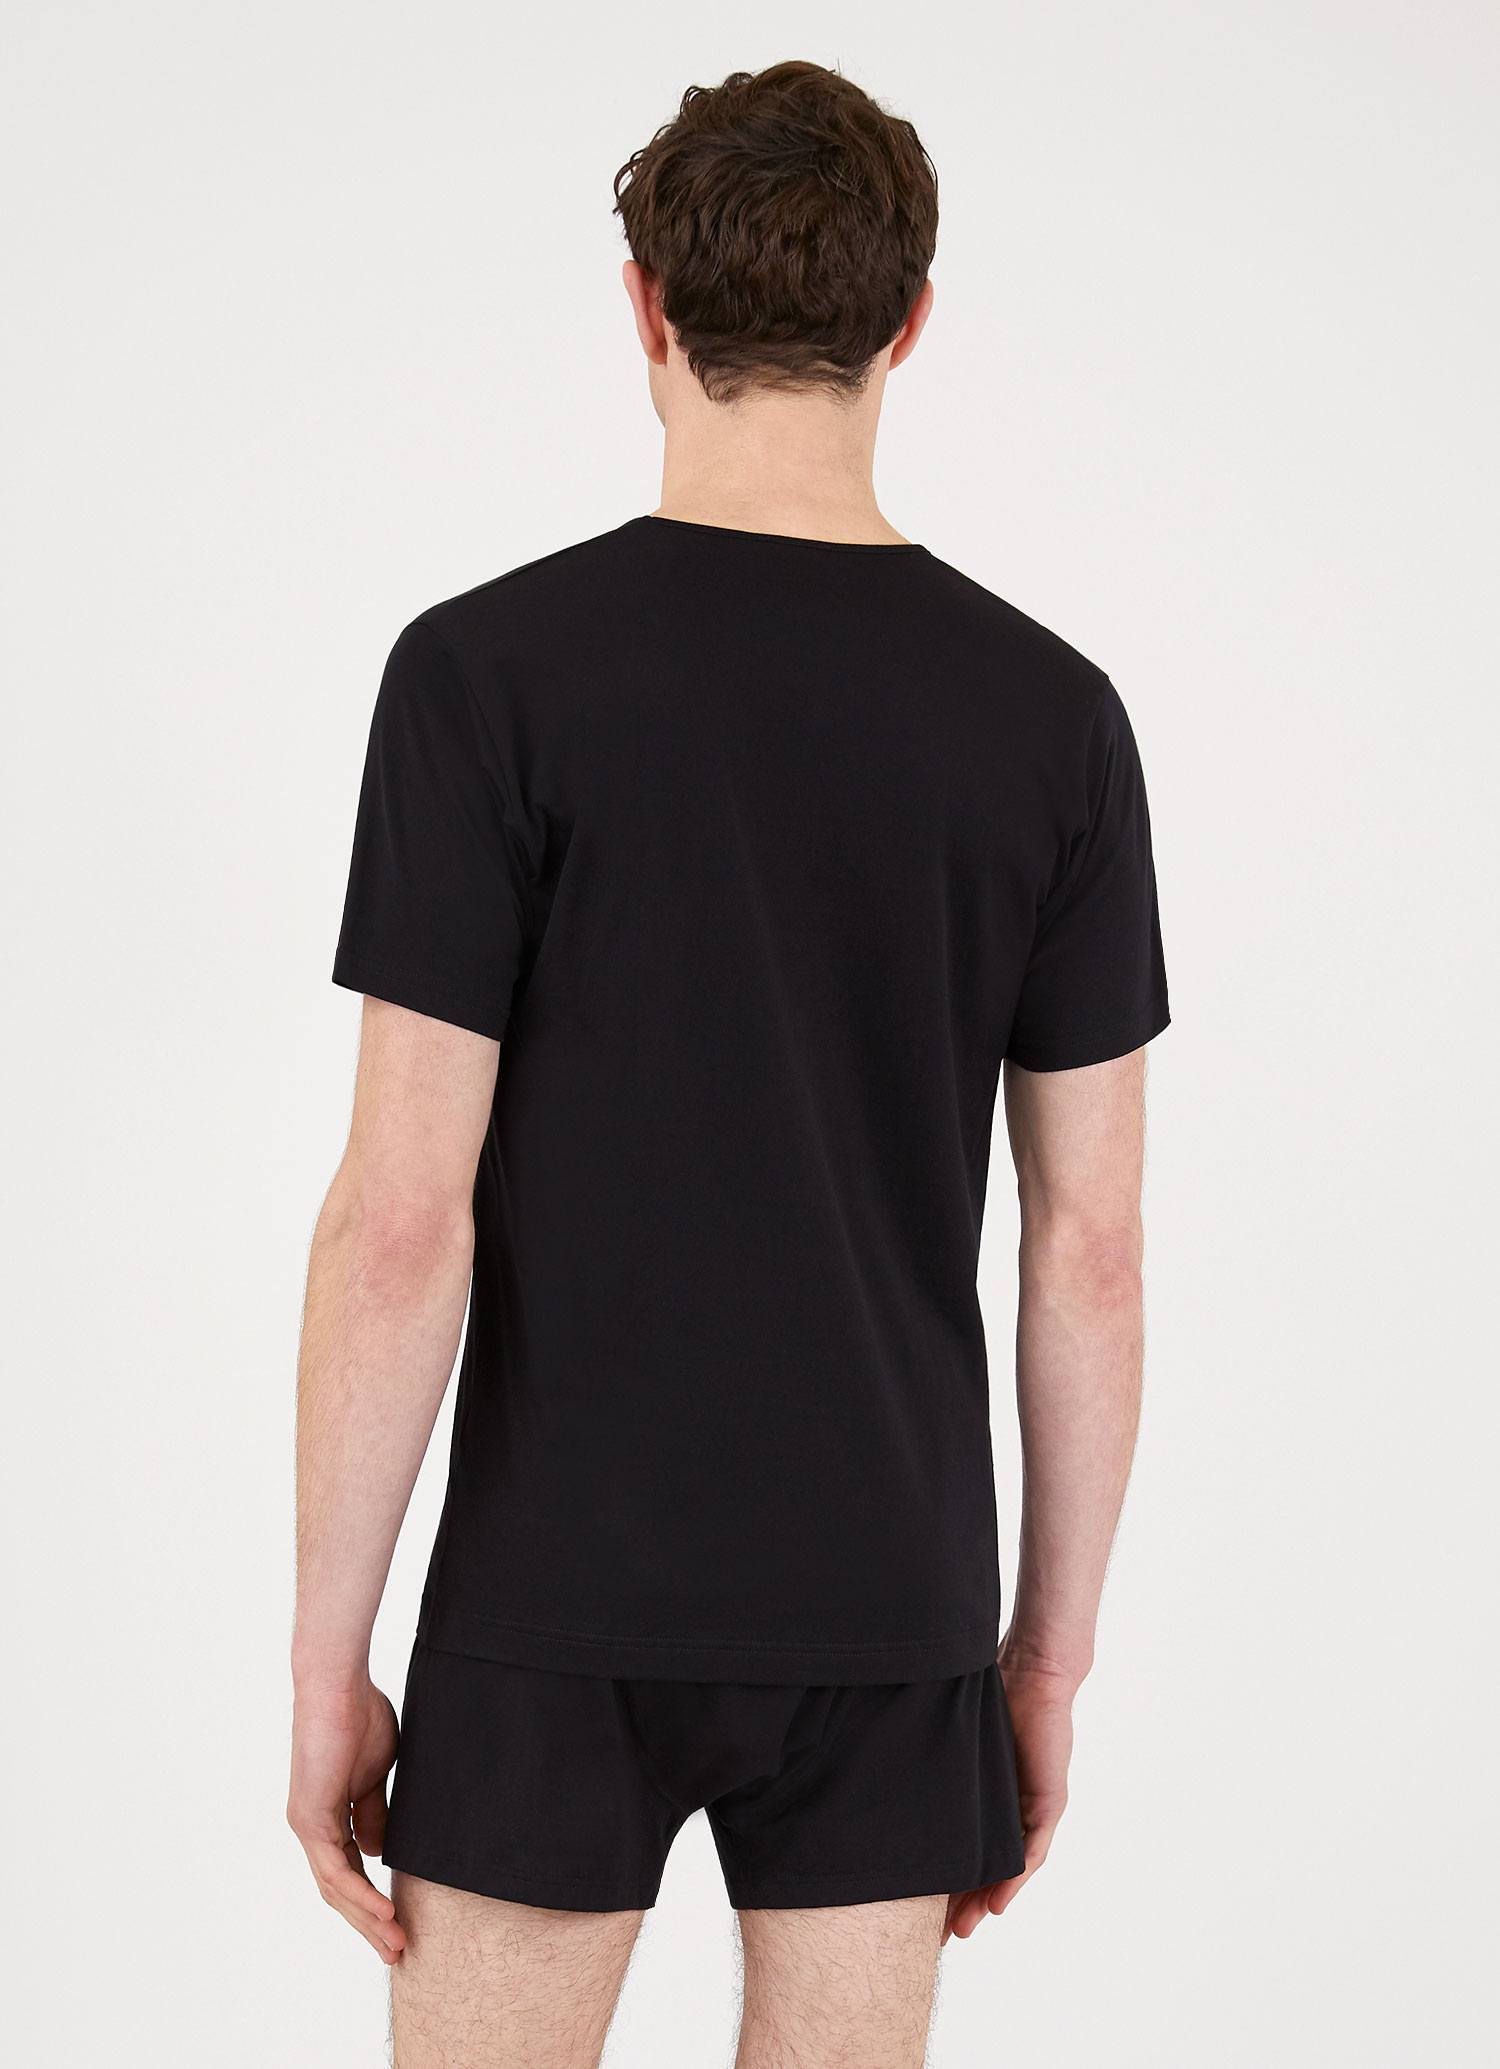 Men's Superfine Cotton V-Neck Underwear T-shirt in Black